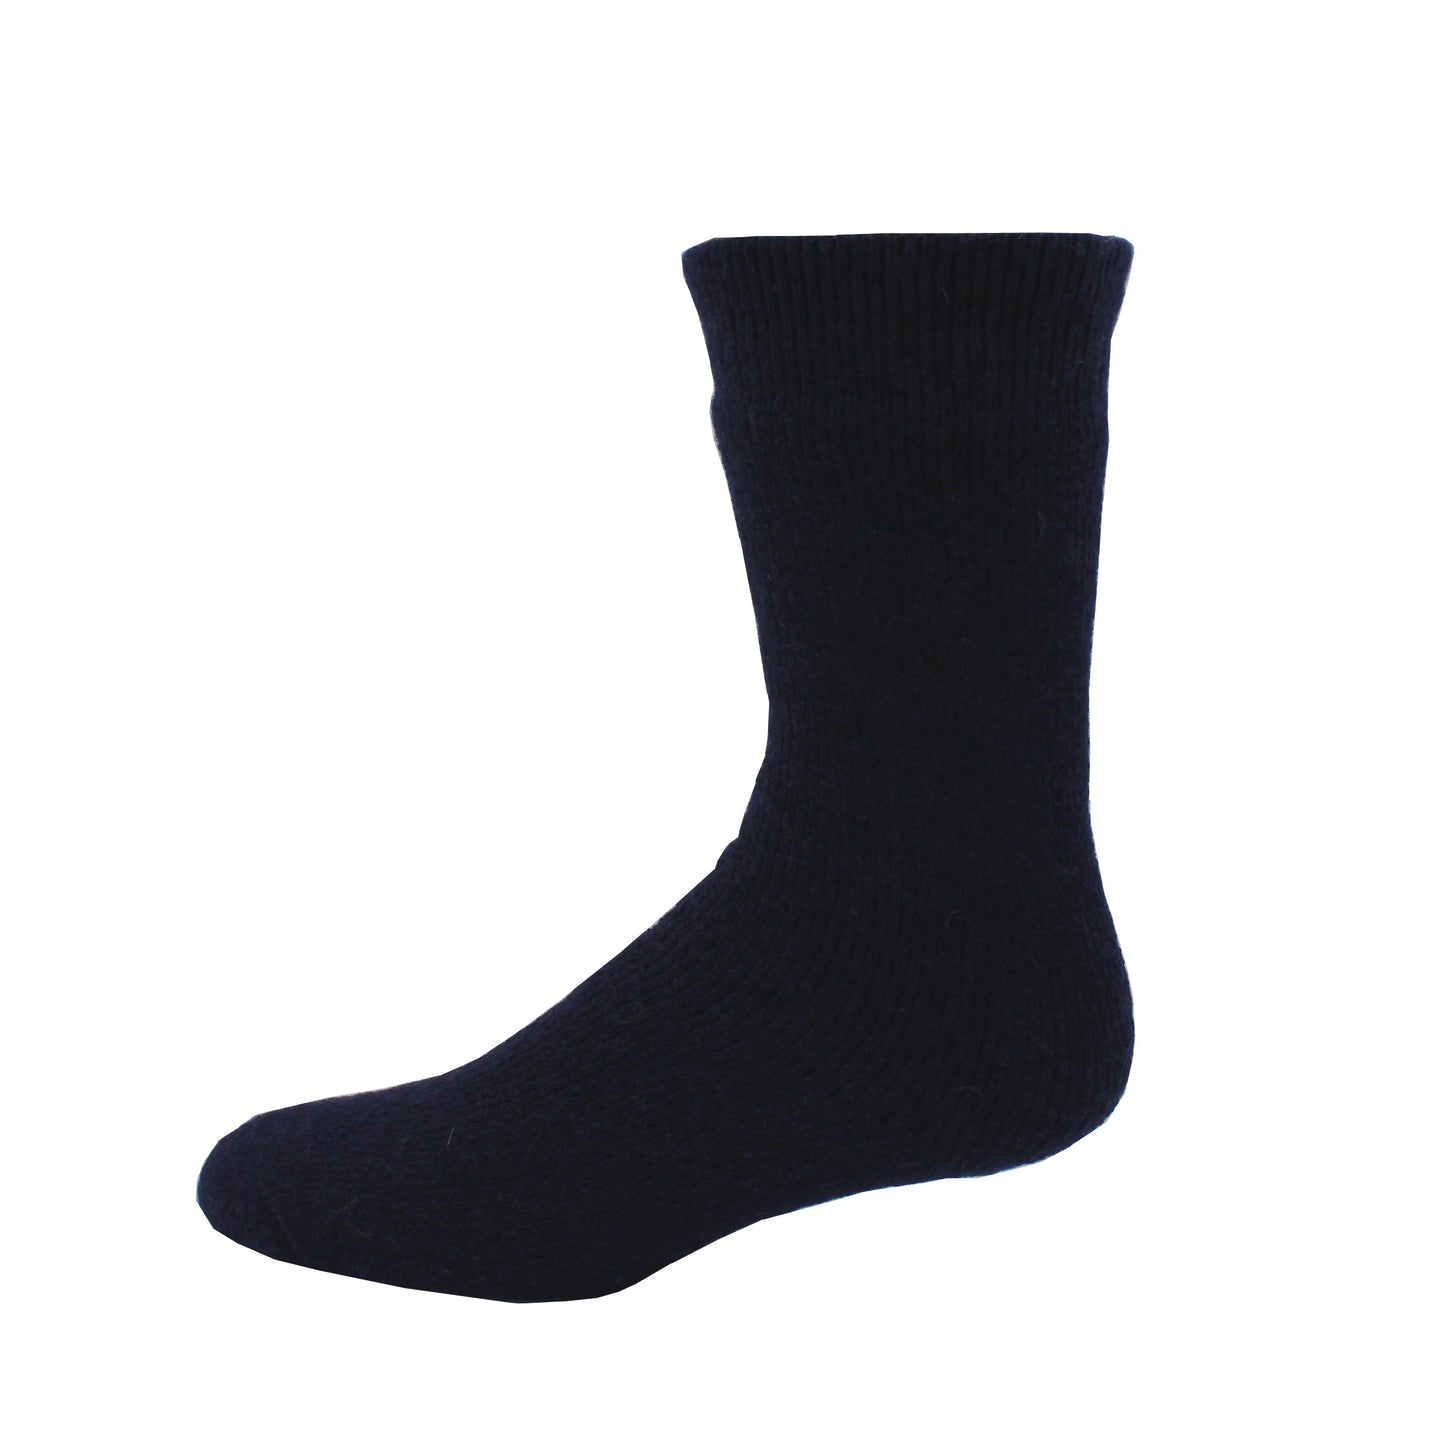 Boreal Thermal Socks